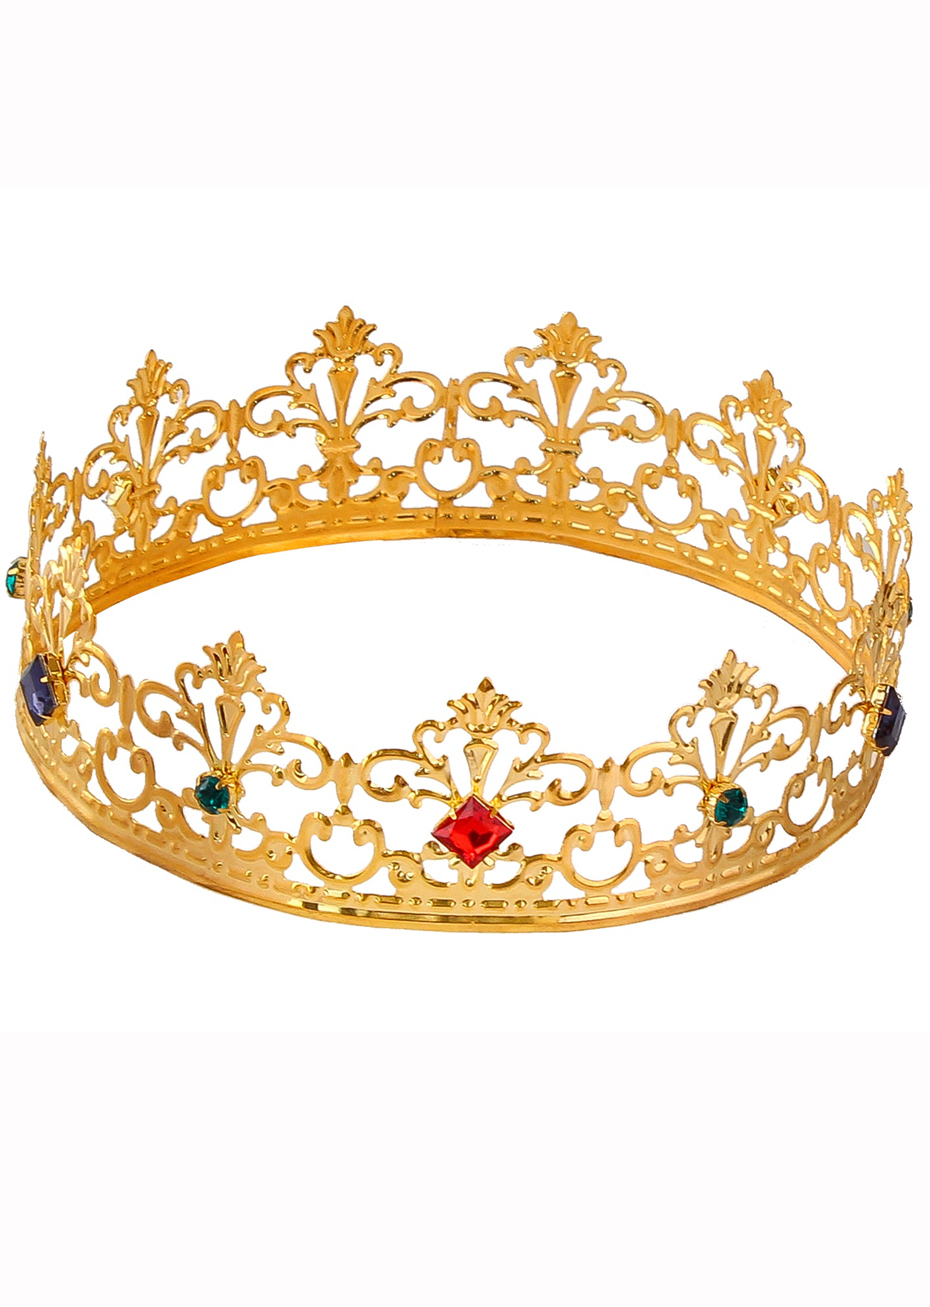 Acheter Accessoires de décoration de fête d'anniversaire, couronne de reine